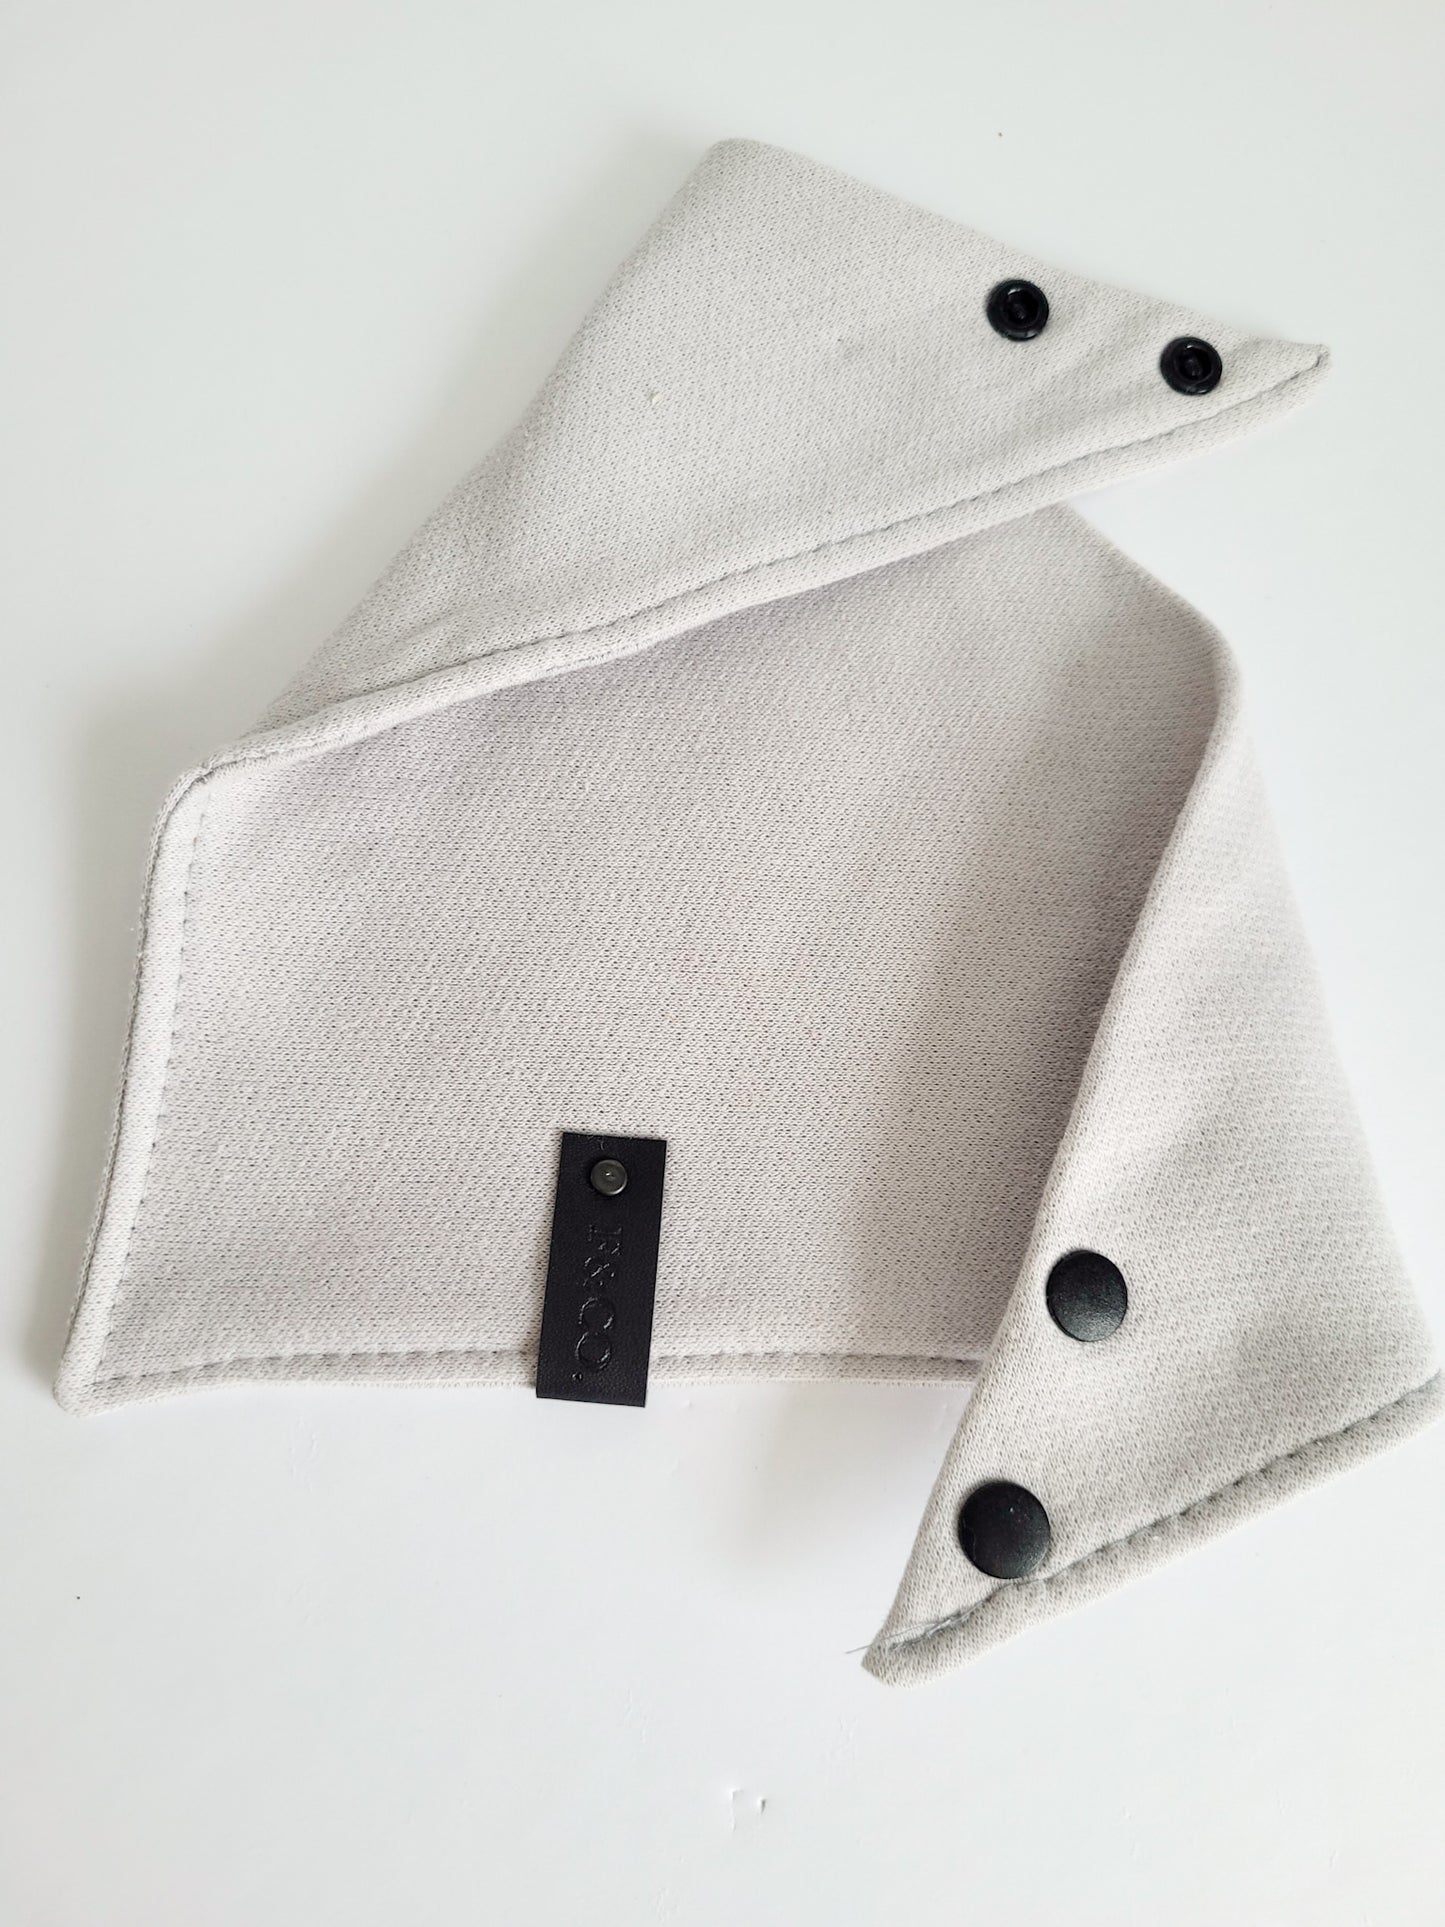 Bandanas de coton ouaté de couleur gris clair avec étiquette de cuir végan noir et bouton pression noir mat en plastique